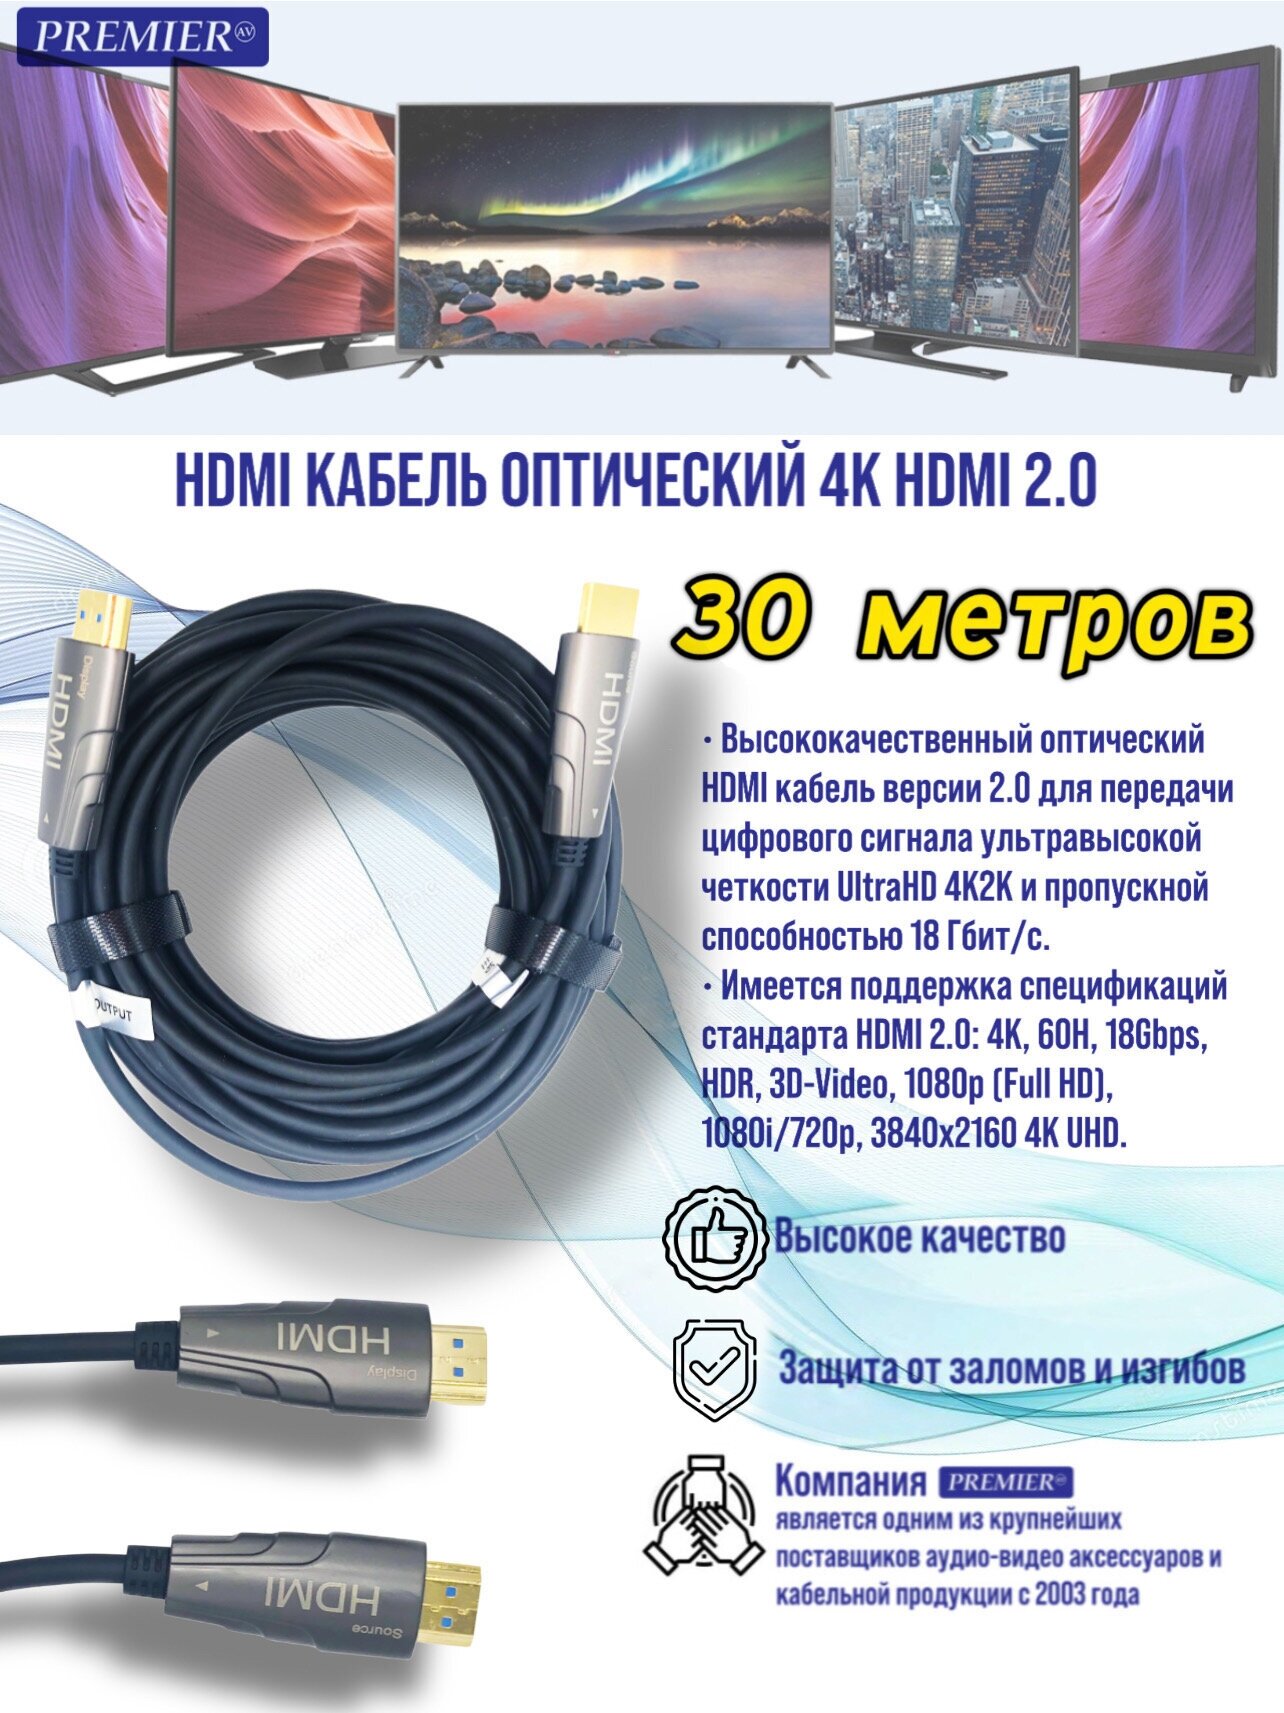 HDMI кабель оптический 4K HDMI 2.0 Active Optical Cable 30 метров